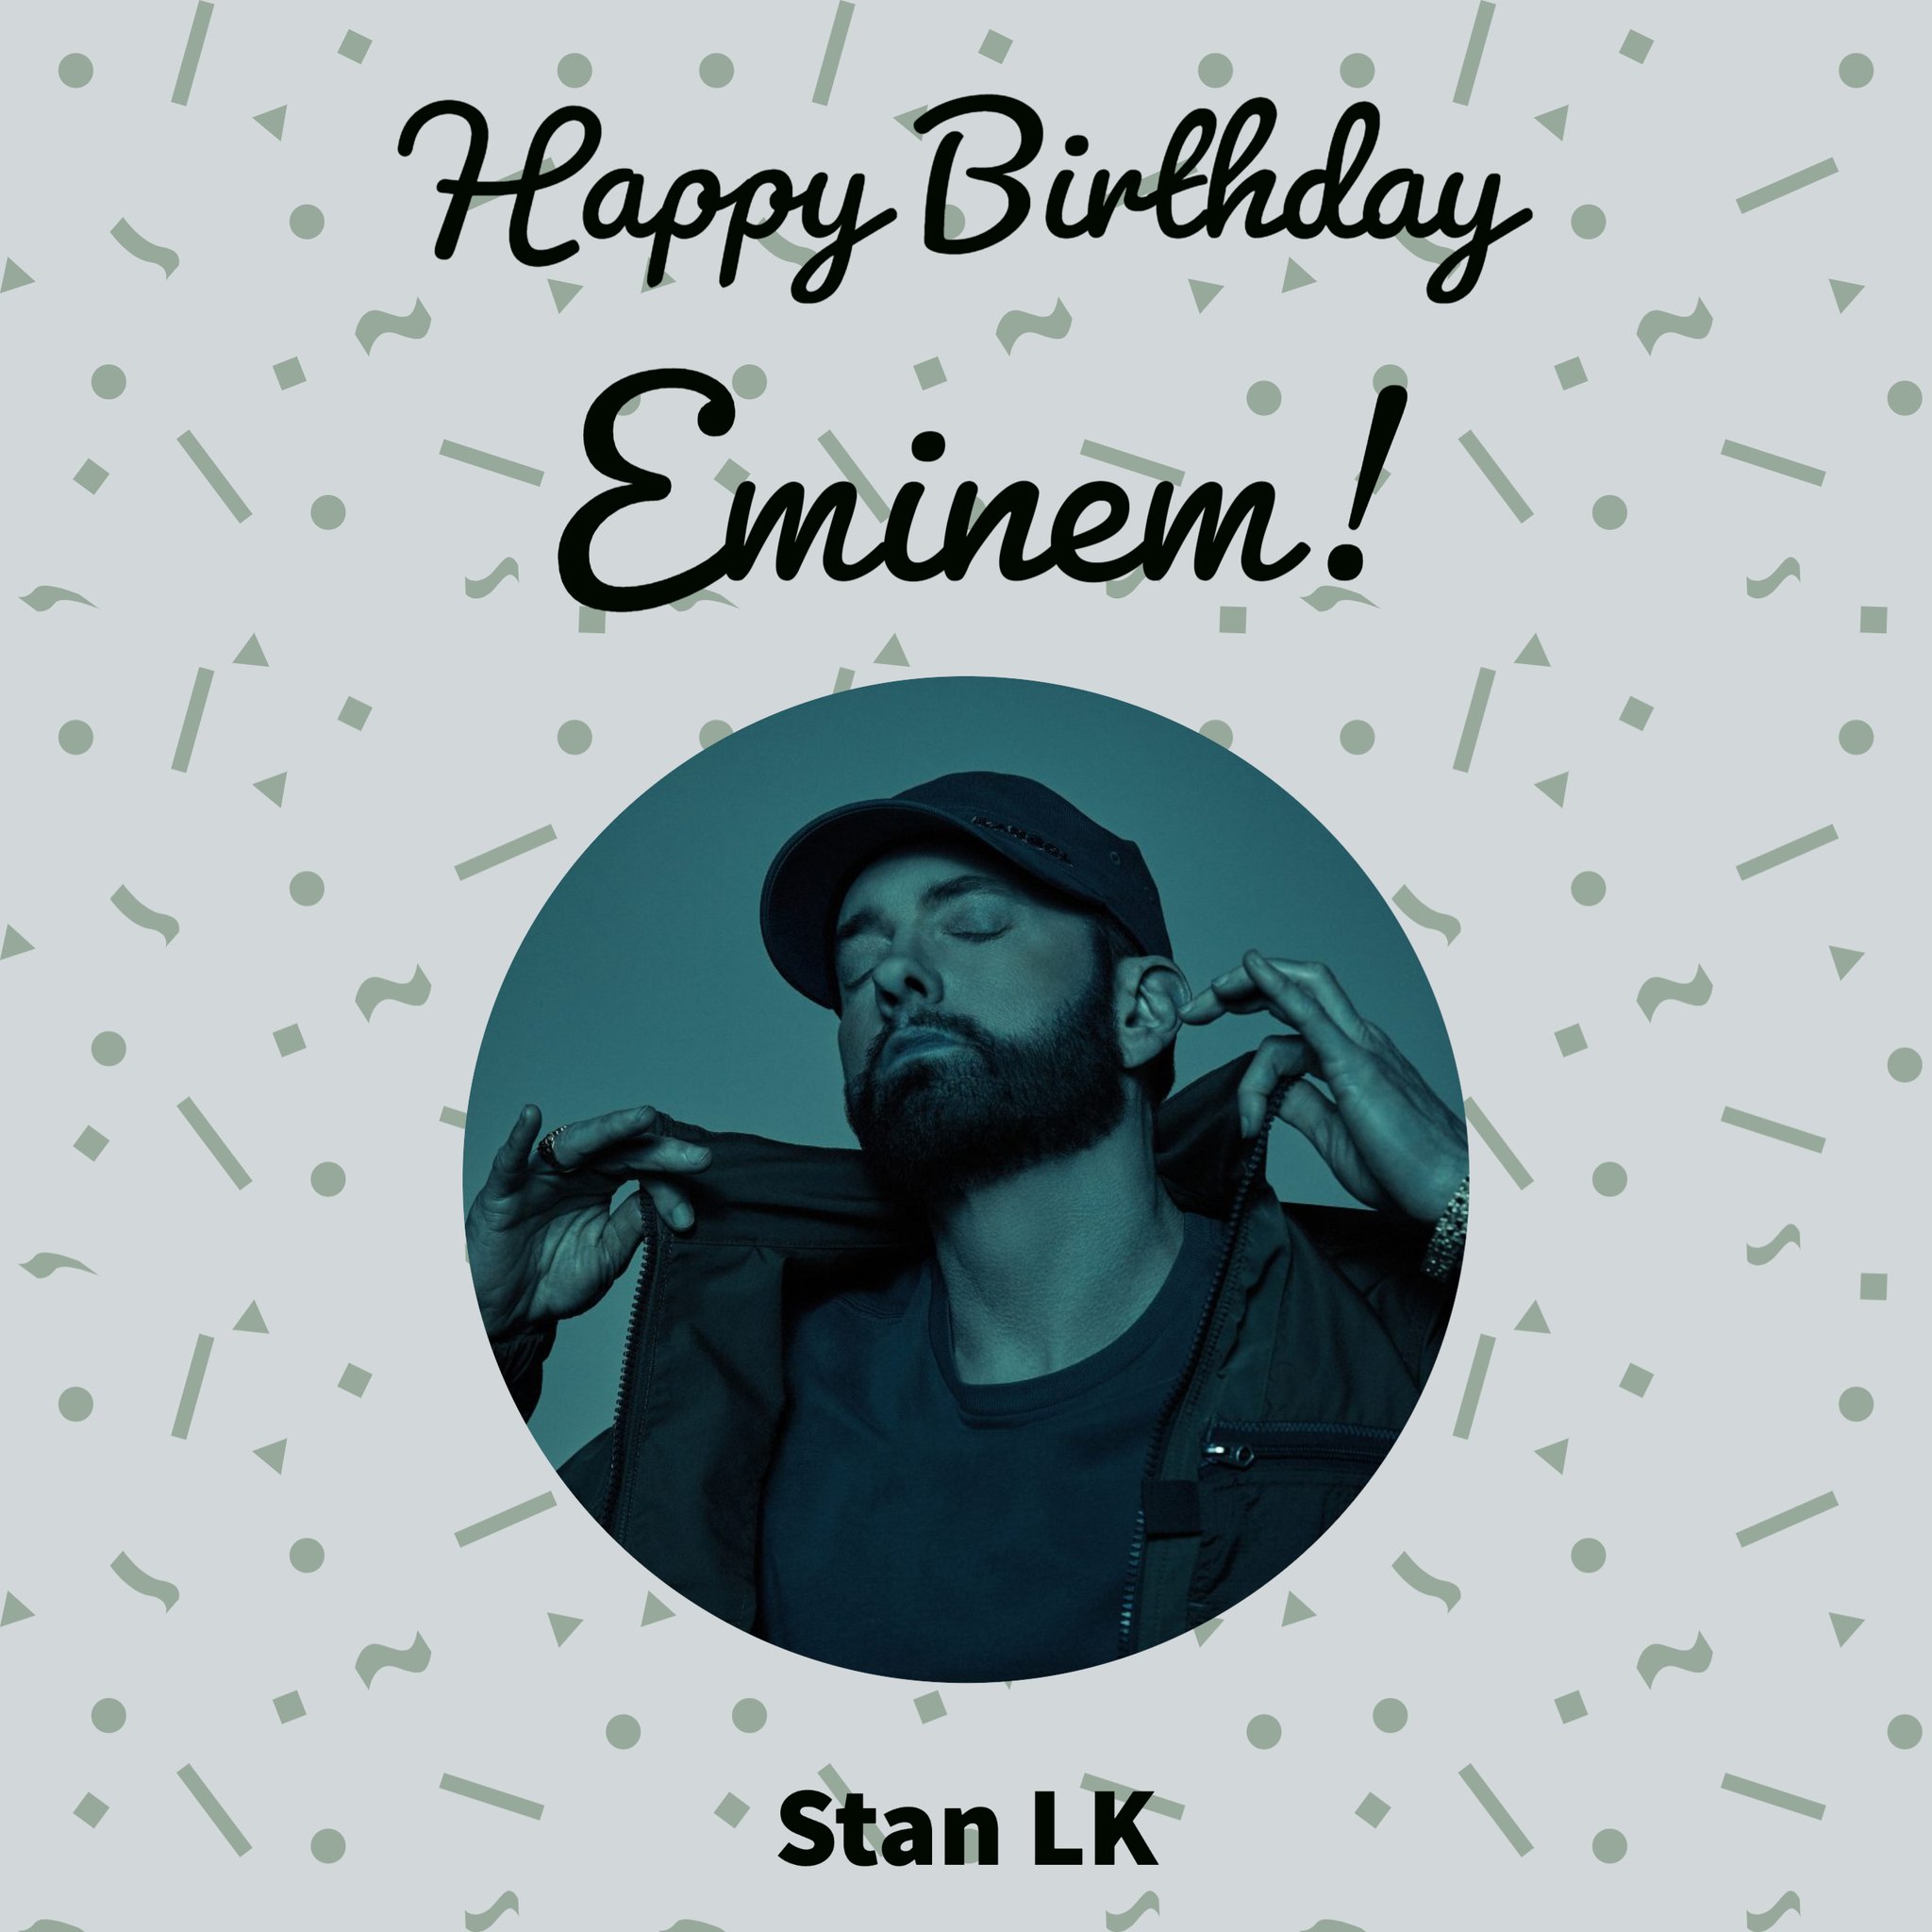 Eminem turns 50 today. Happy Birthday! 